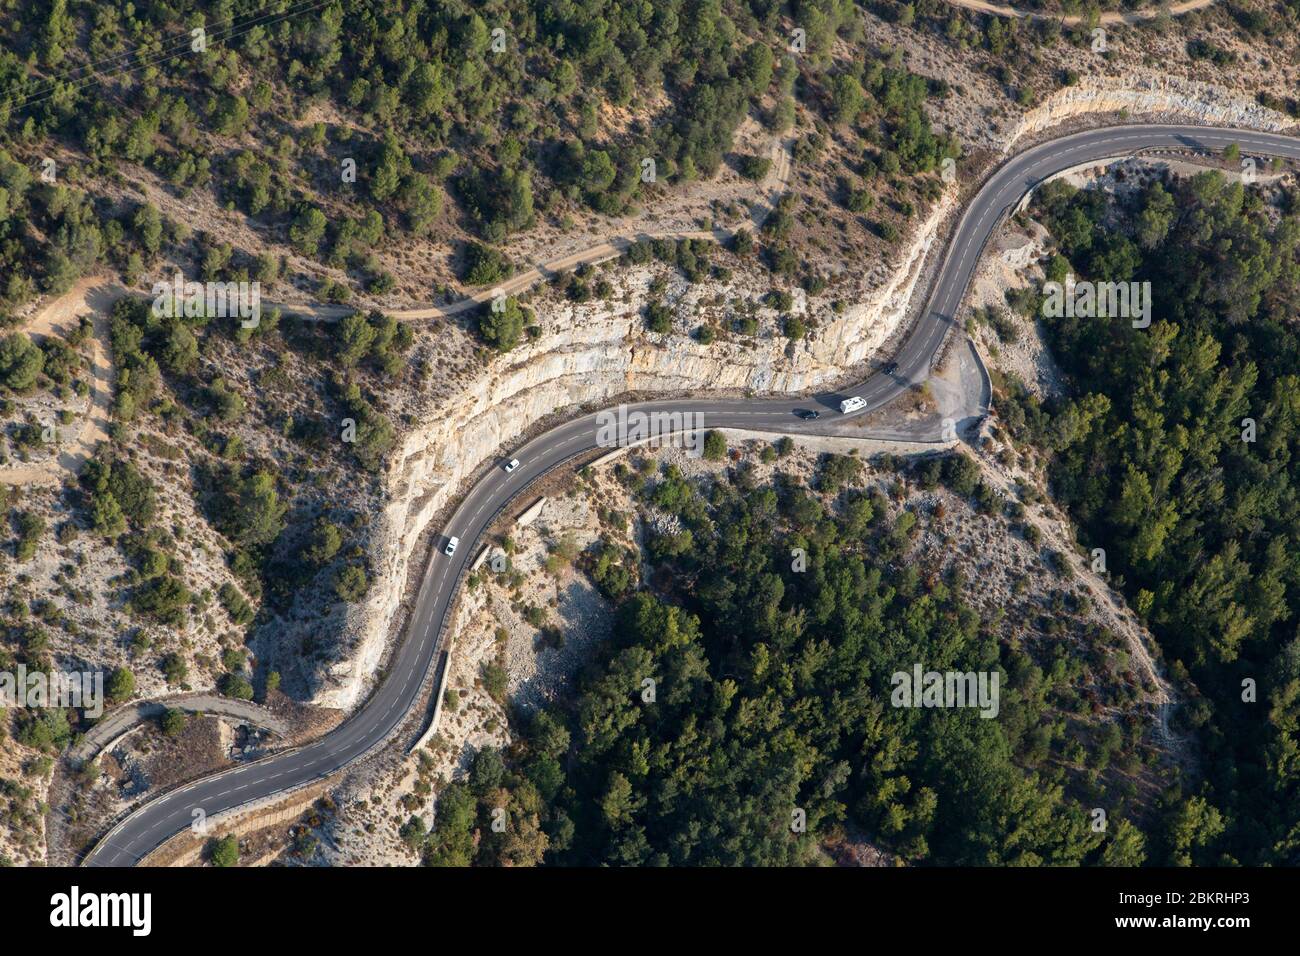 France, Alpes de Haute Provence, Saint Martin de Bromes (aerial view) Stock Photo